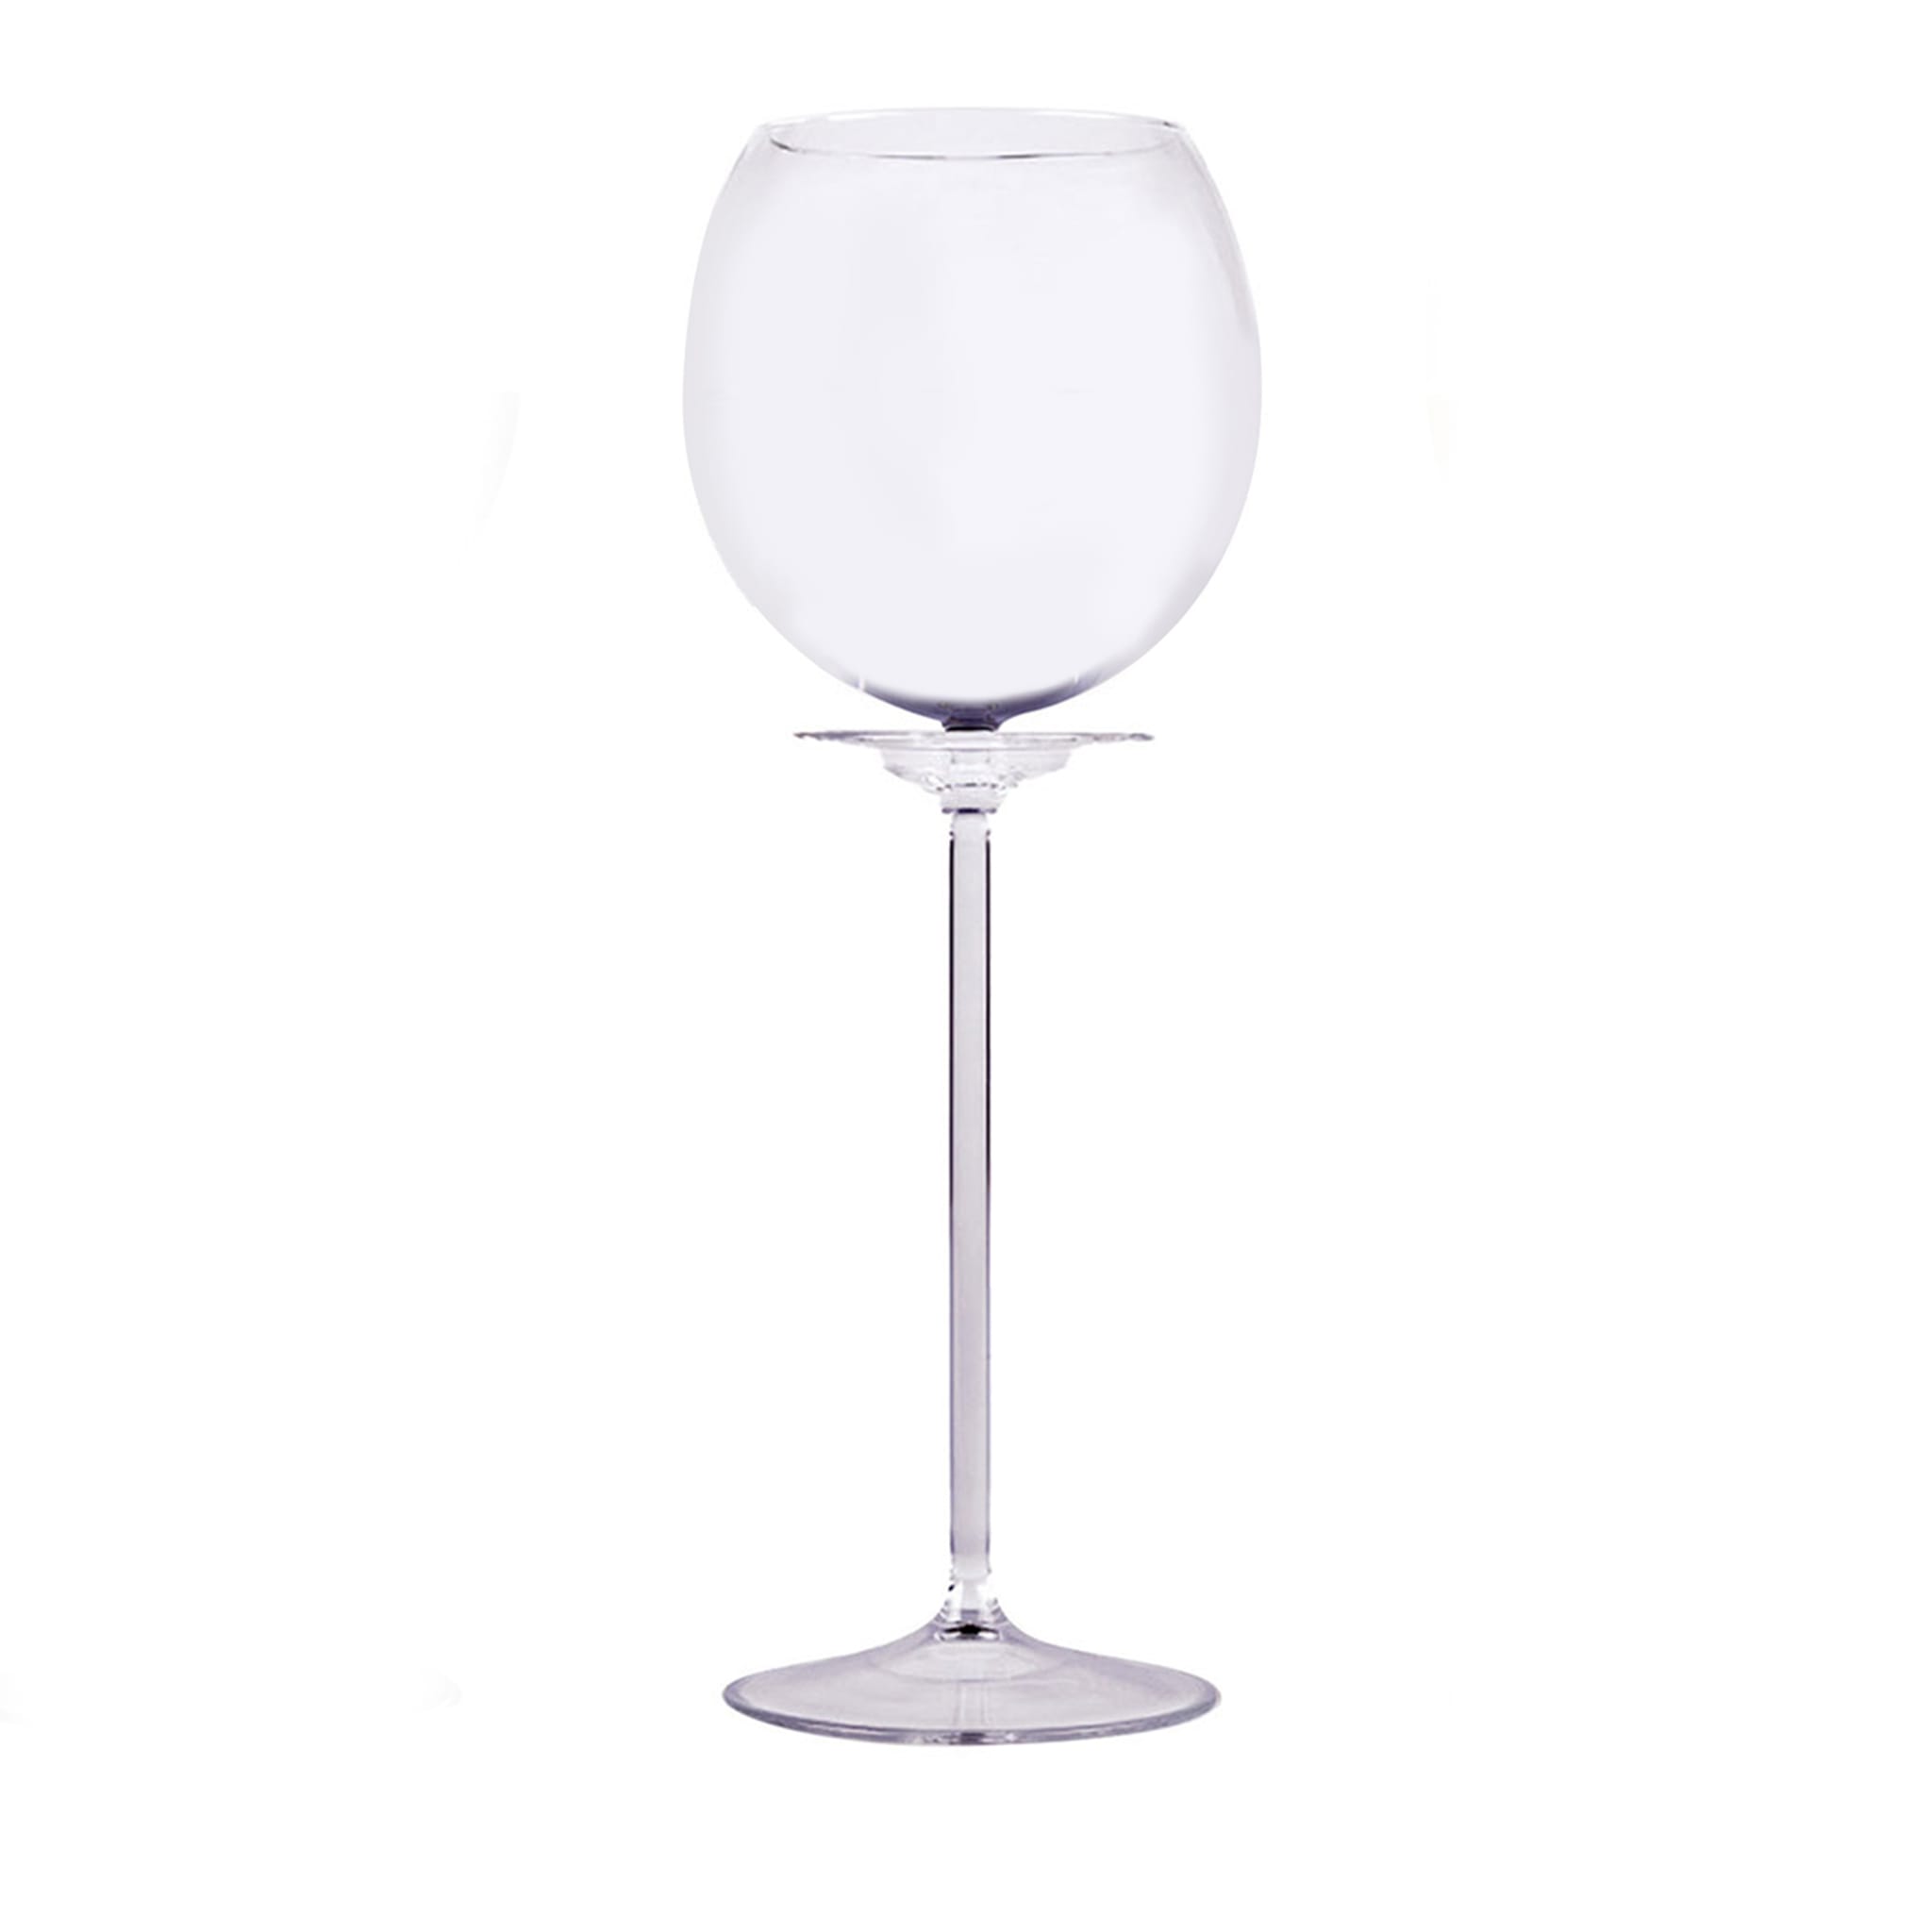 Fiore Bianco Wine Glass by Francesco Paretti - Main view